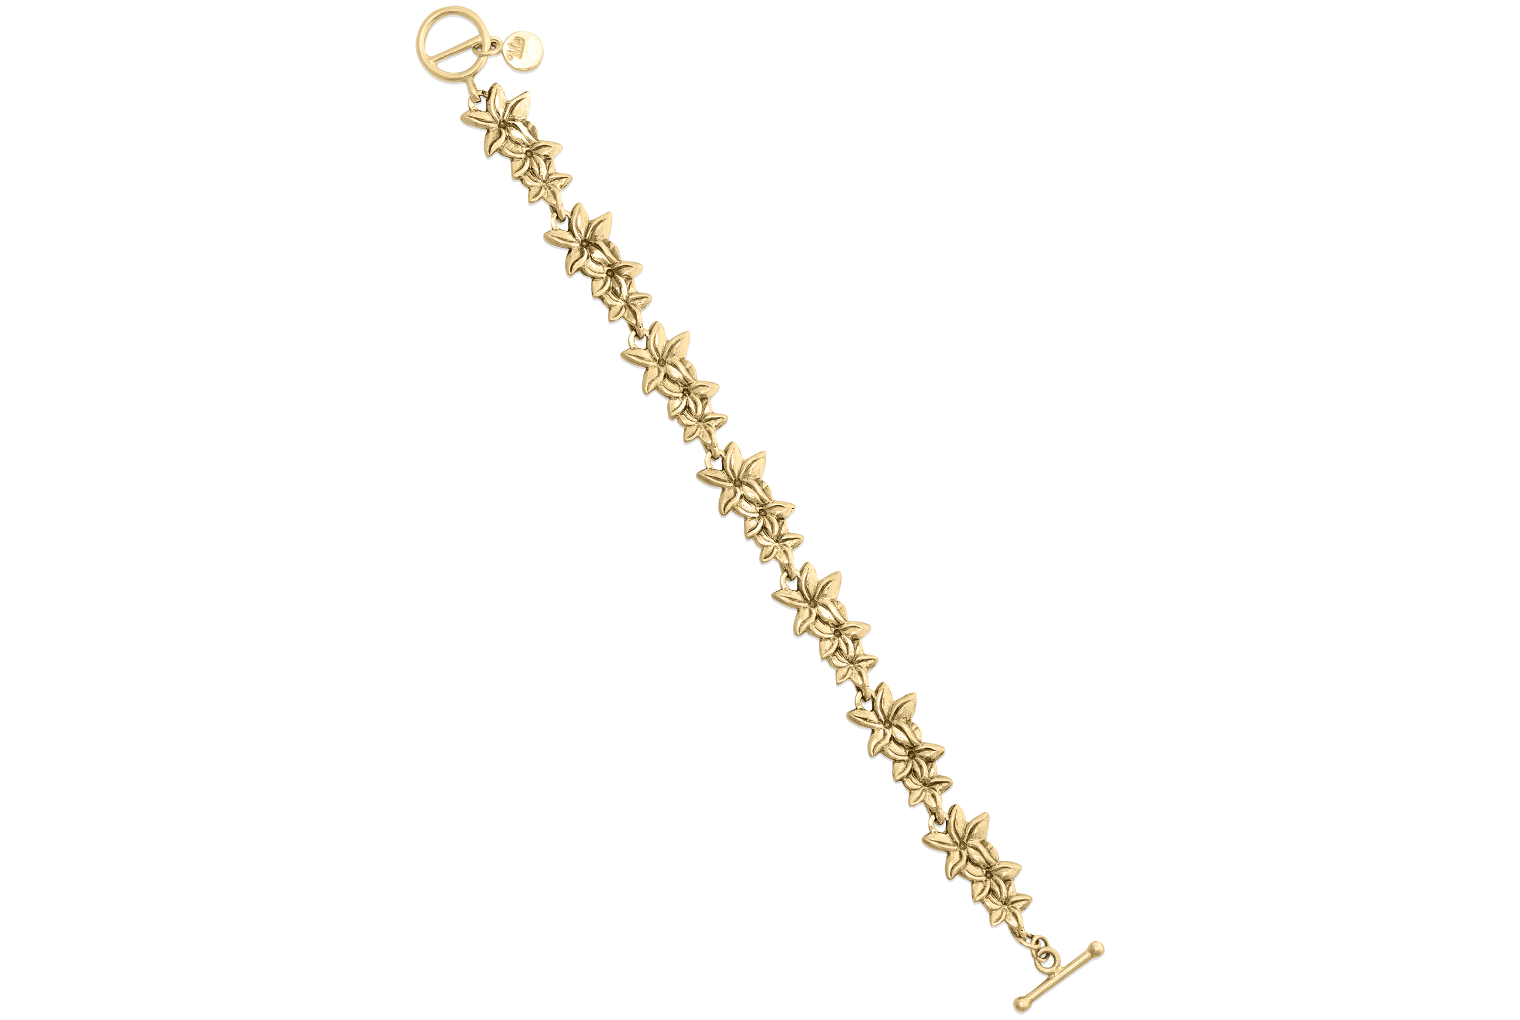 Mignon Faget New Orleans Charm Bracelet - 14K Gold - Length 7